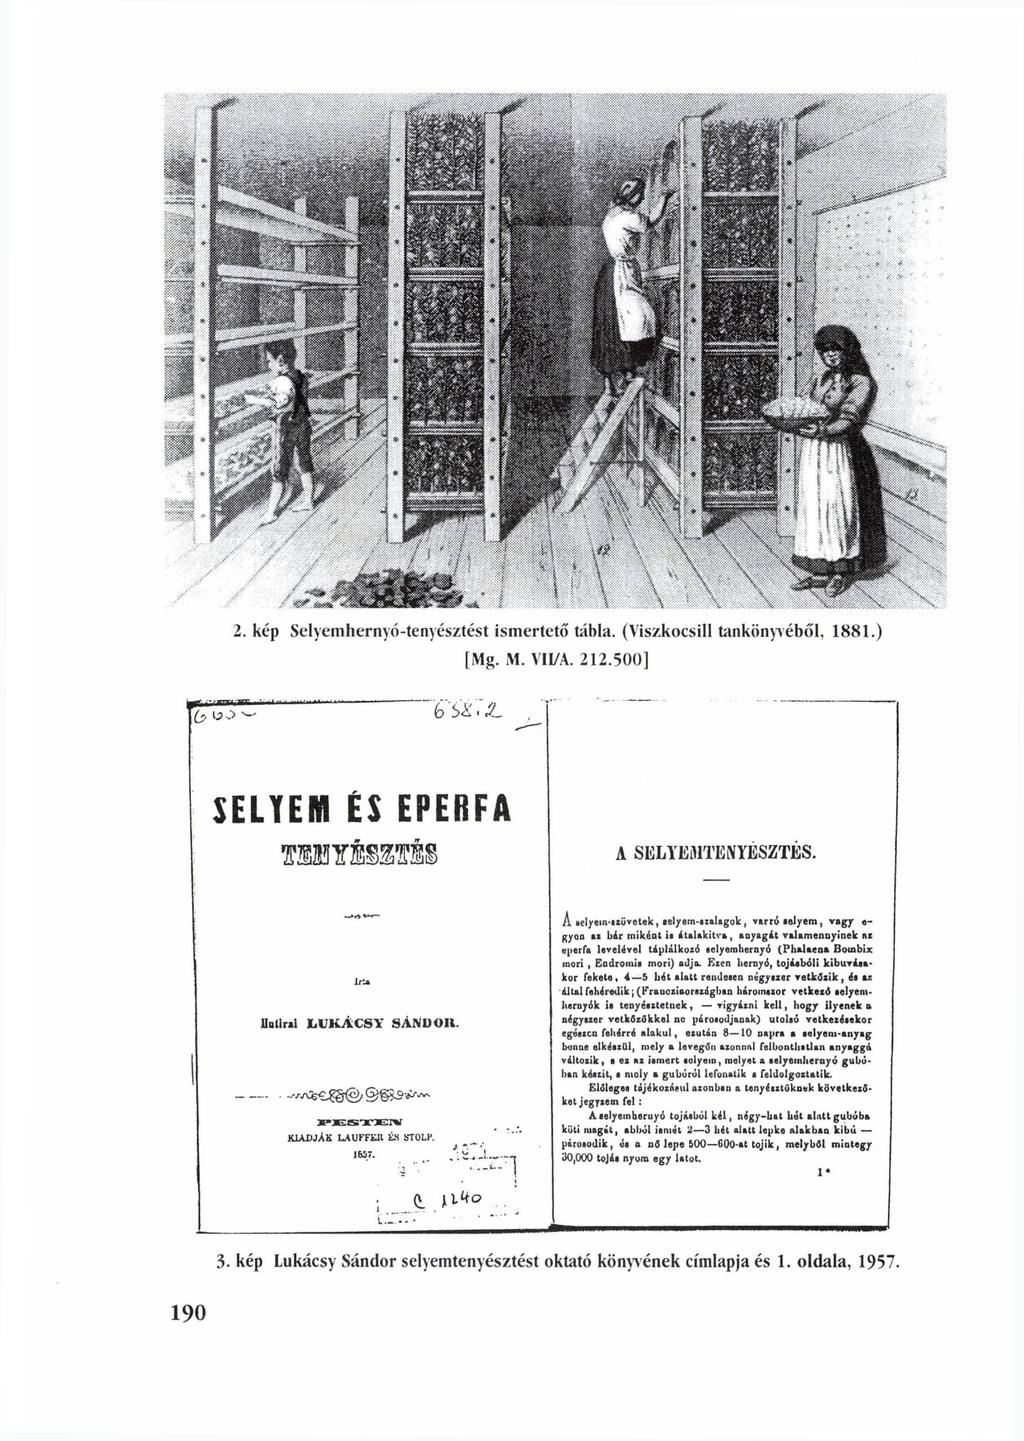 2. kép Selyemhernyó-tenyésztést ismertető tábla. (Viszkocsill tankönyvéből, 1881.) [Mg. M.